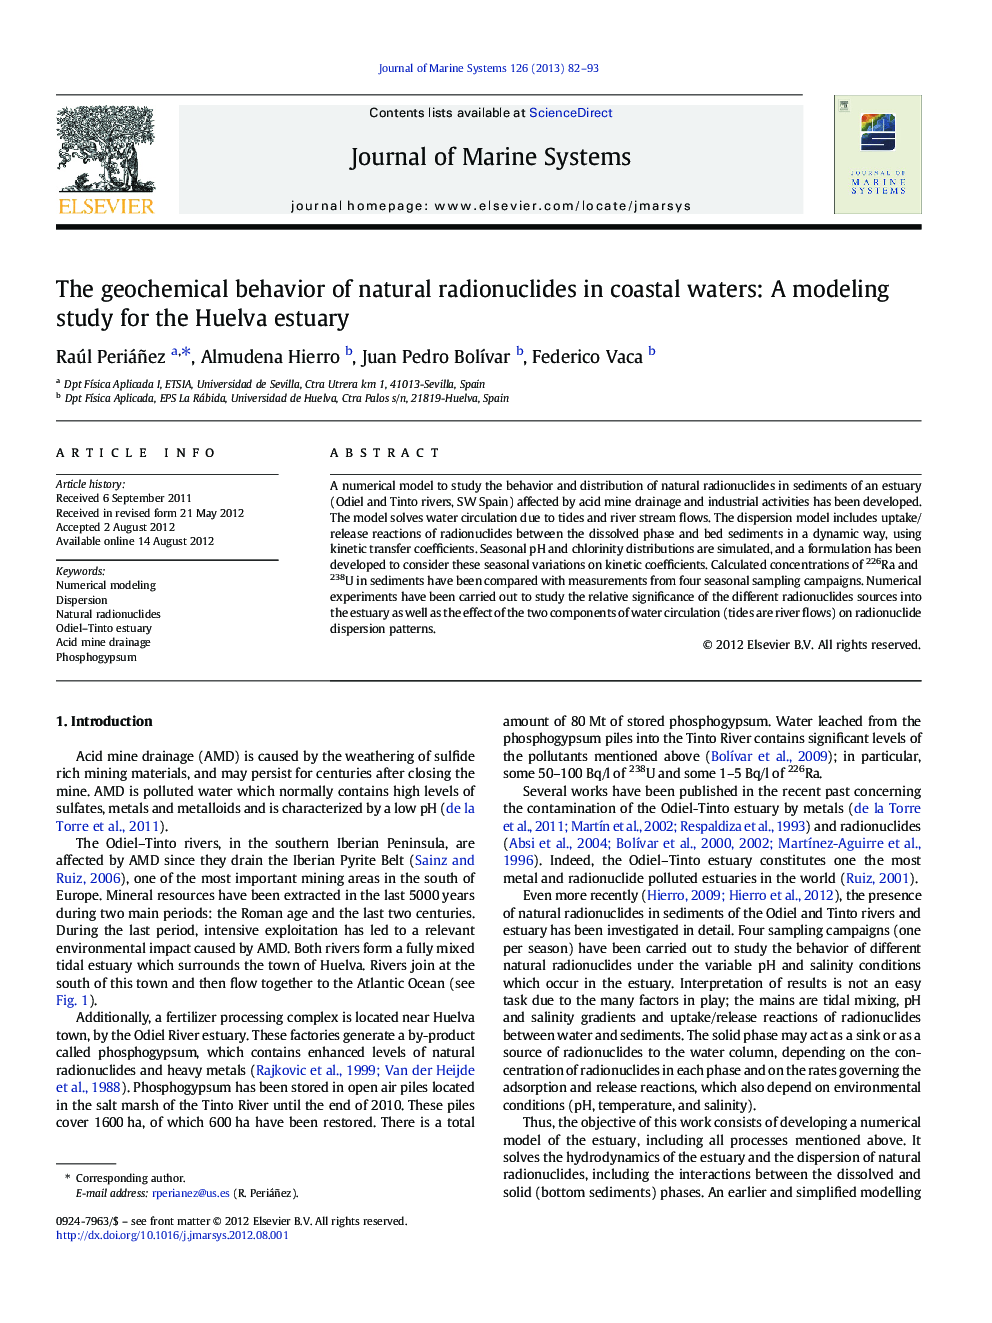 رفتار ژئوشیمیایی رادیونوکلئید های طبیعی در آبهای ساحلی: یک مطالعه مدلسازی برای رسوب هوالو 